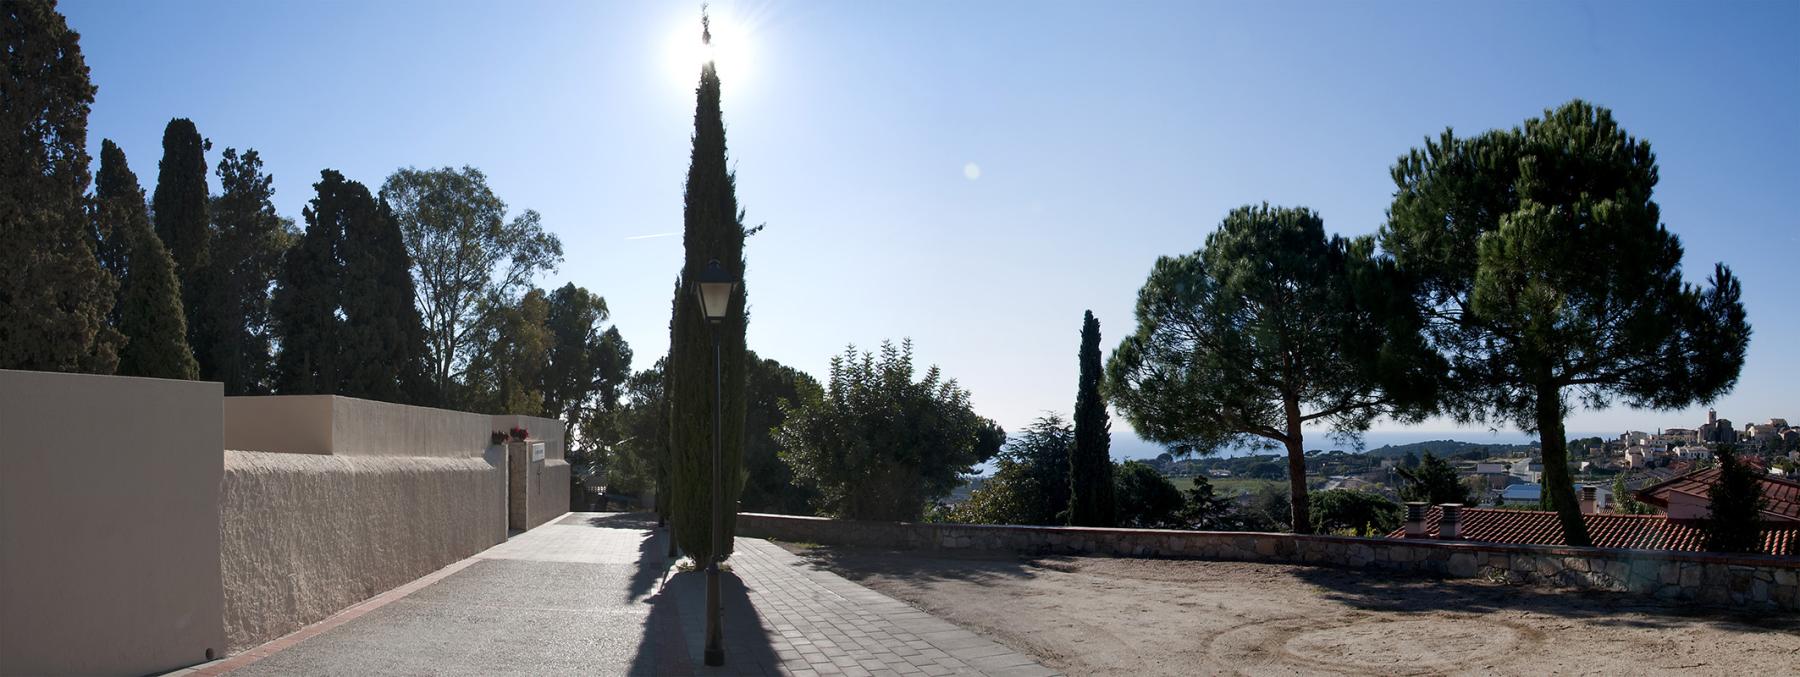 Des de l’entrada al cementiri de Sant Vicenç de Montalt es pot gaudir d’una vista privilegiada sobre el poble i els seus voltants